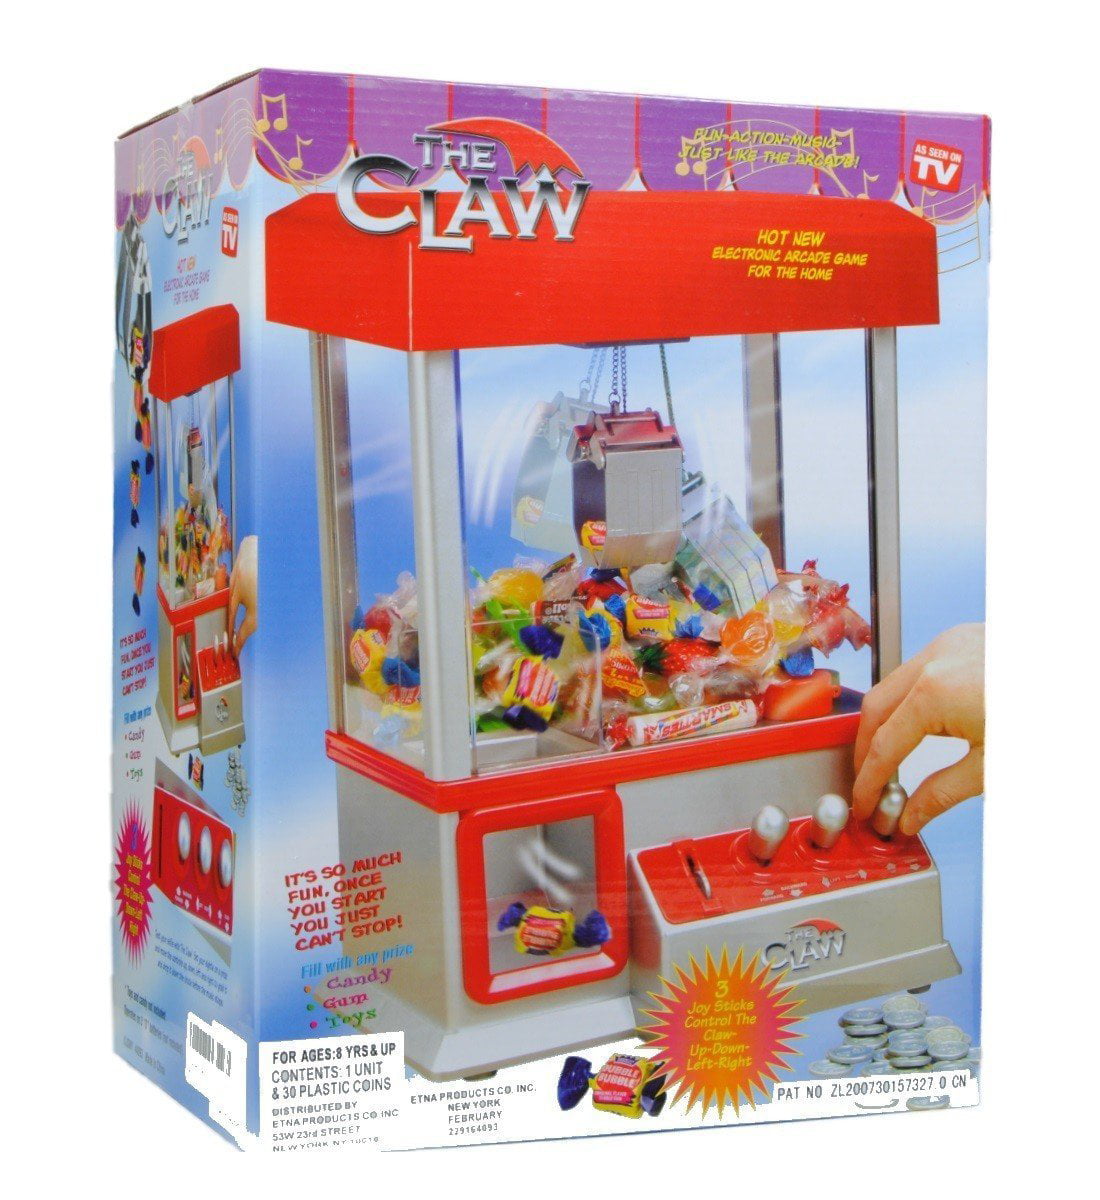 a toy claw machine